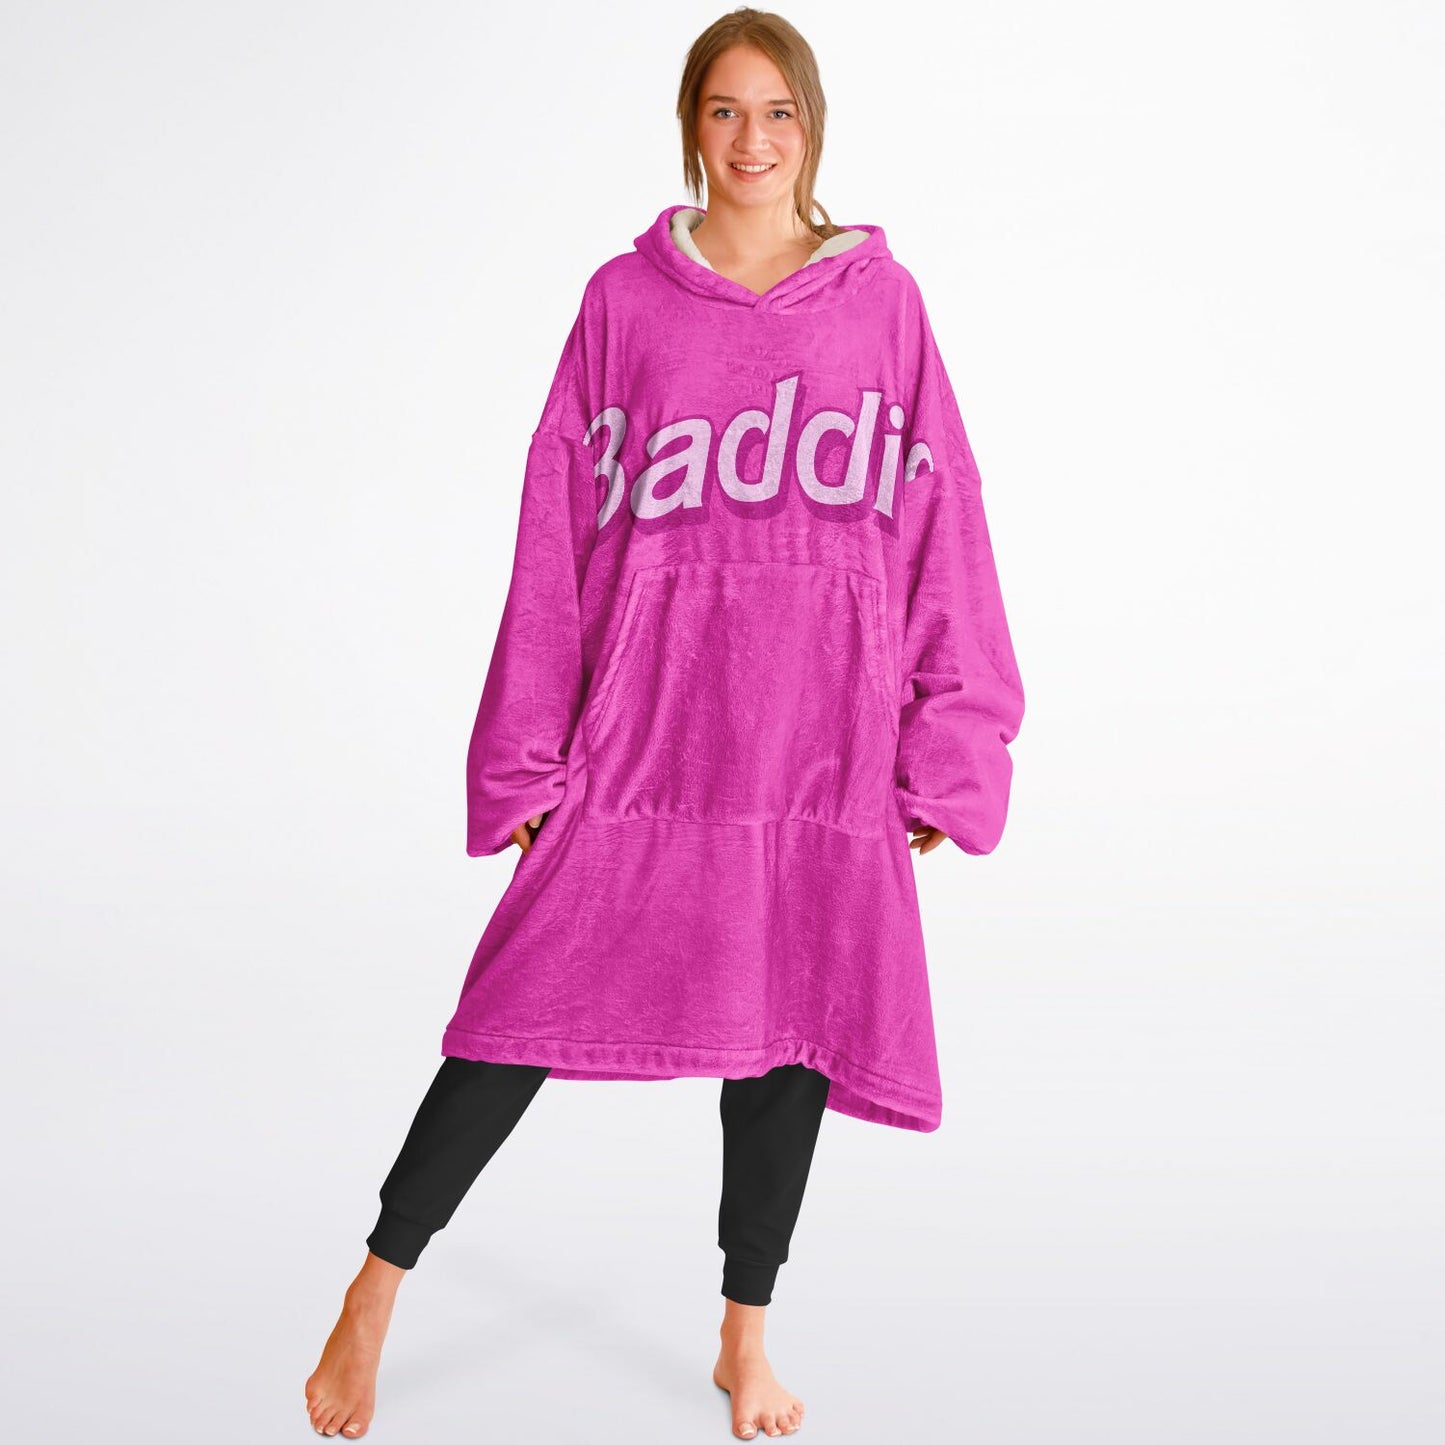 Baddie Hoodie Blanket | Baddie Snug Hoodie